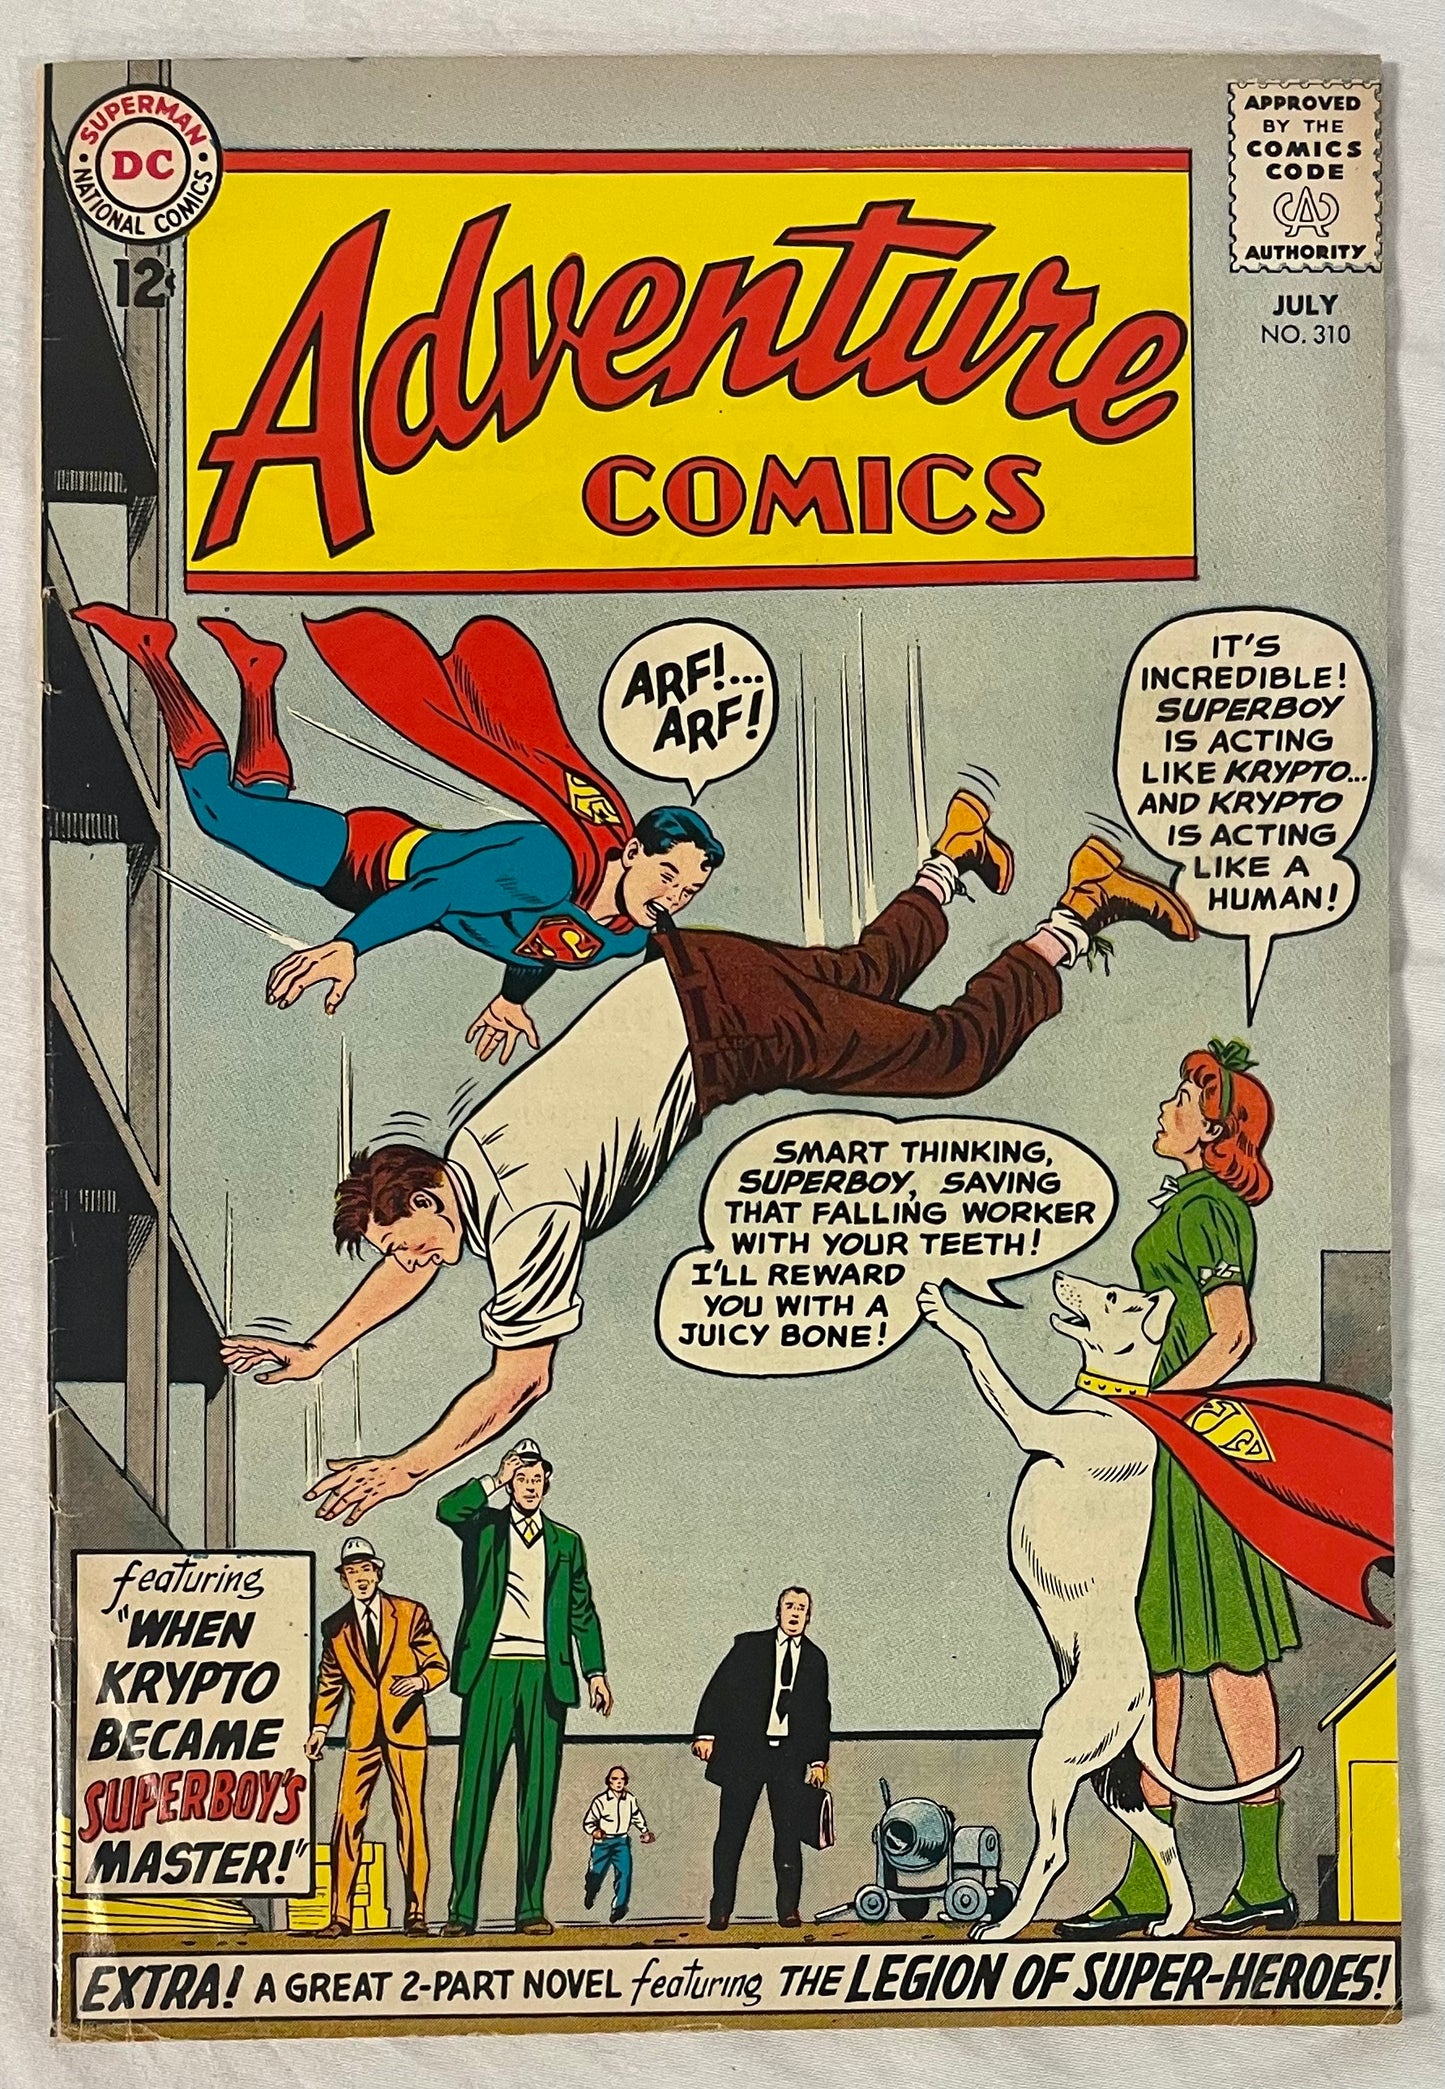 DC Comics Adventure Comics No. 310